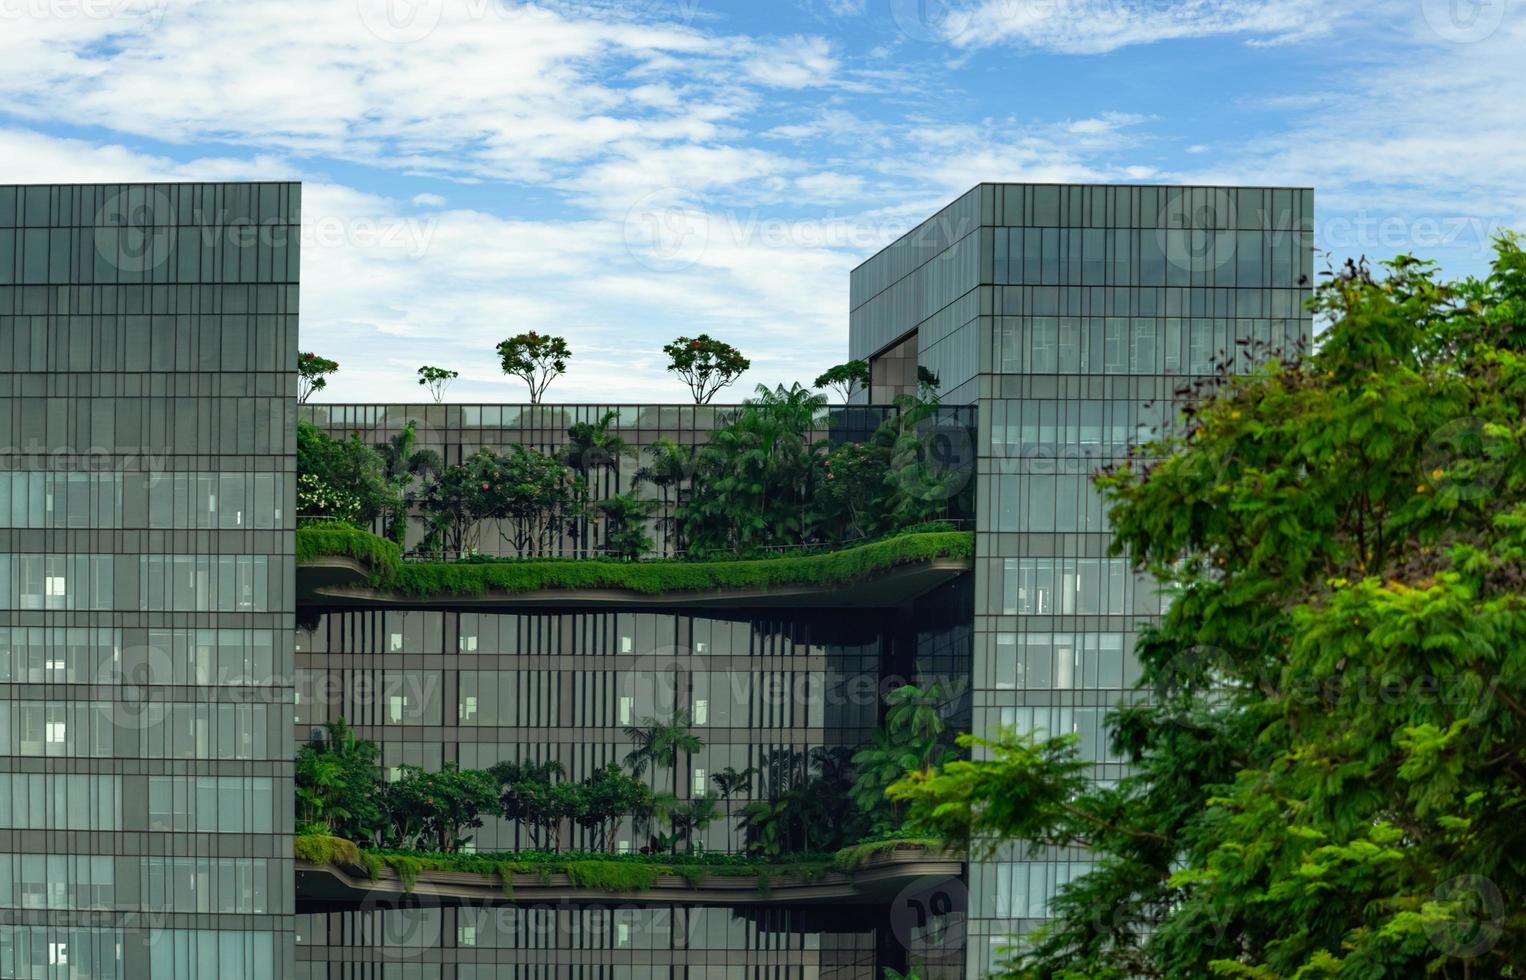 milieuvriendelijk glazen gebouw met verticale tuin in moderne stad. groene plant en boom bos en klimop op gevel op duurzaam bouwen. energiebesparende architectuur met verticale tuin. modern ontwerp. foto